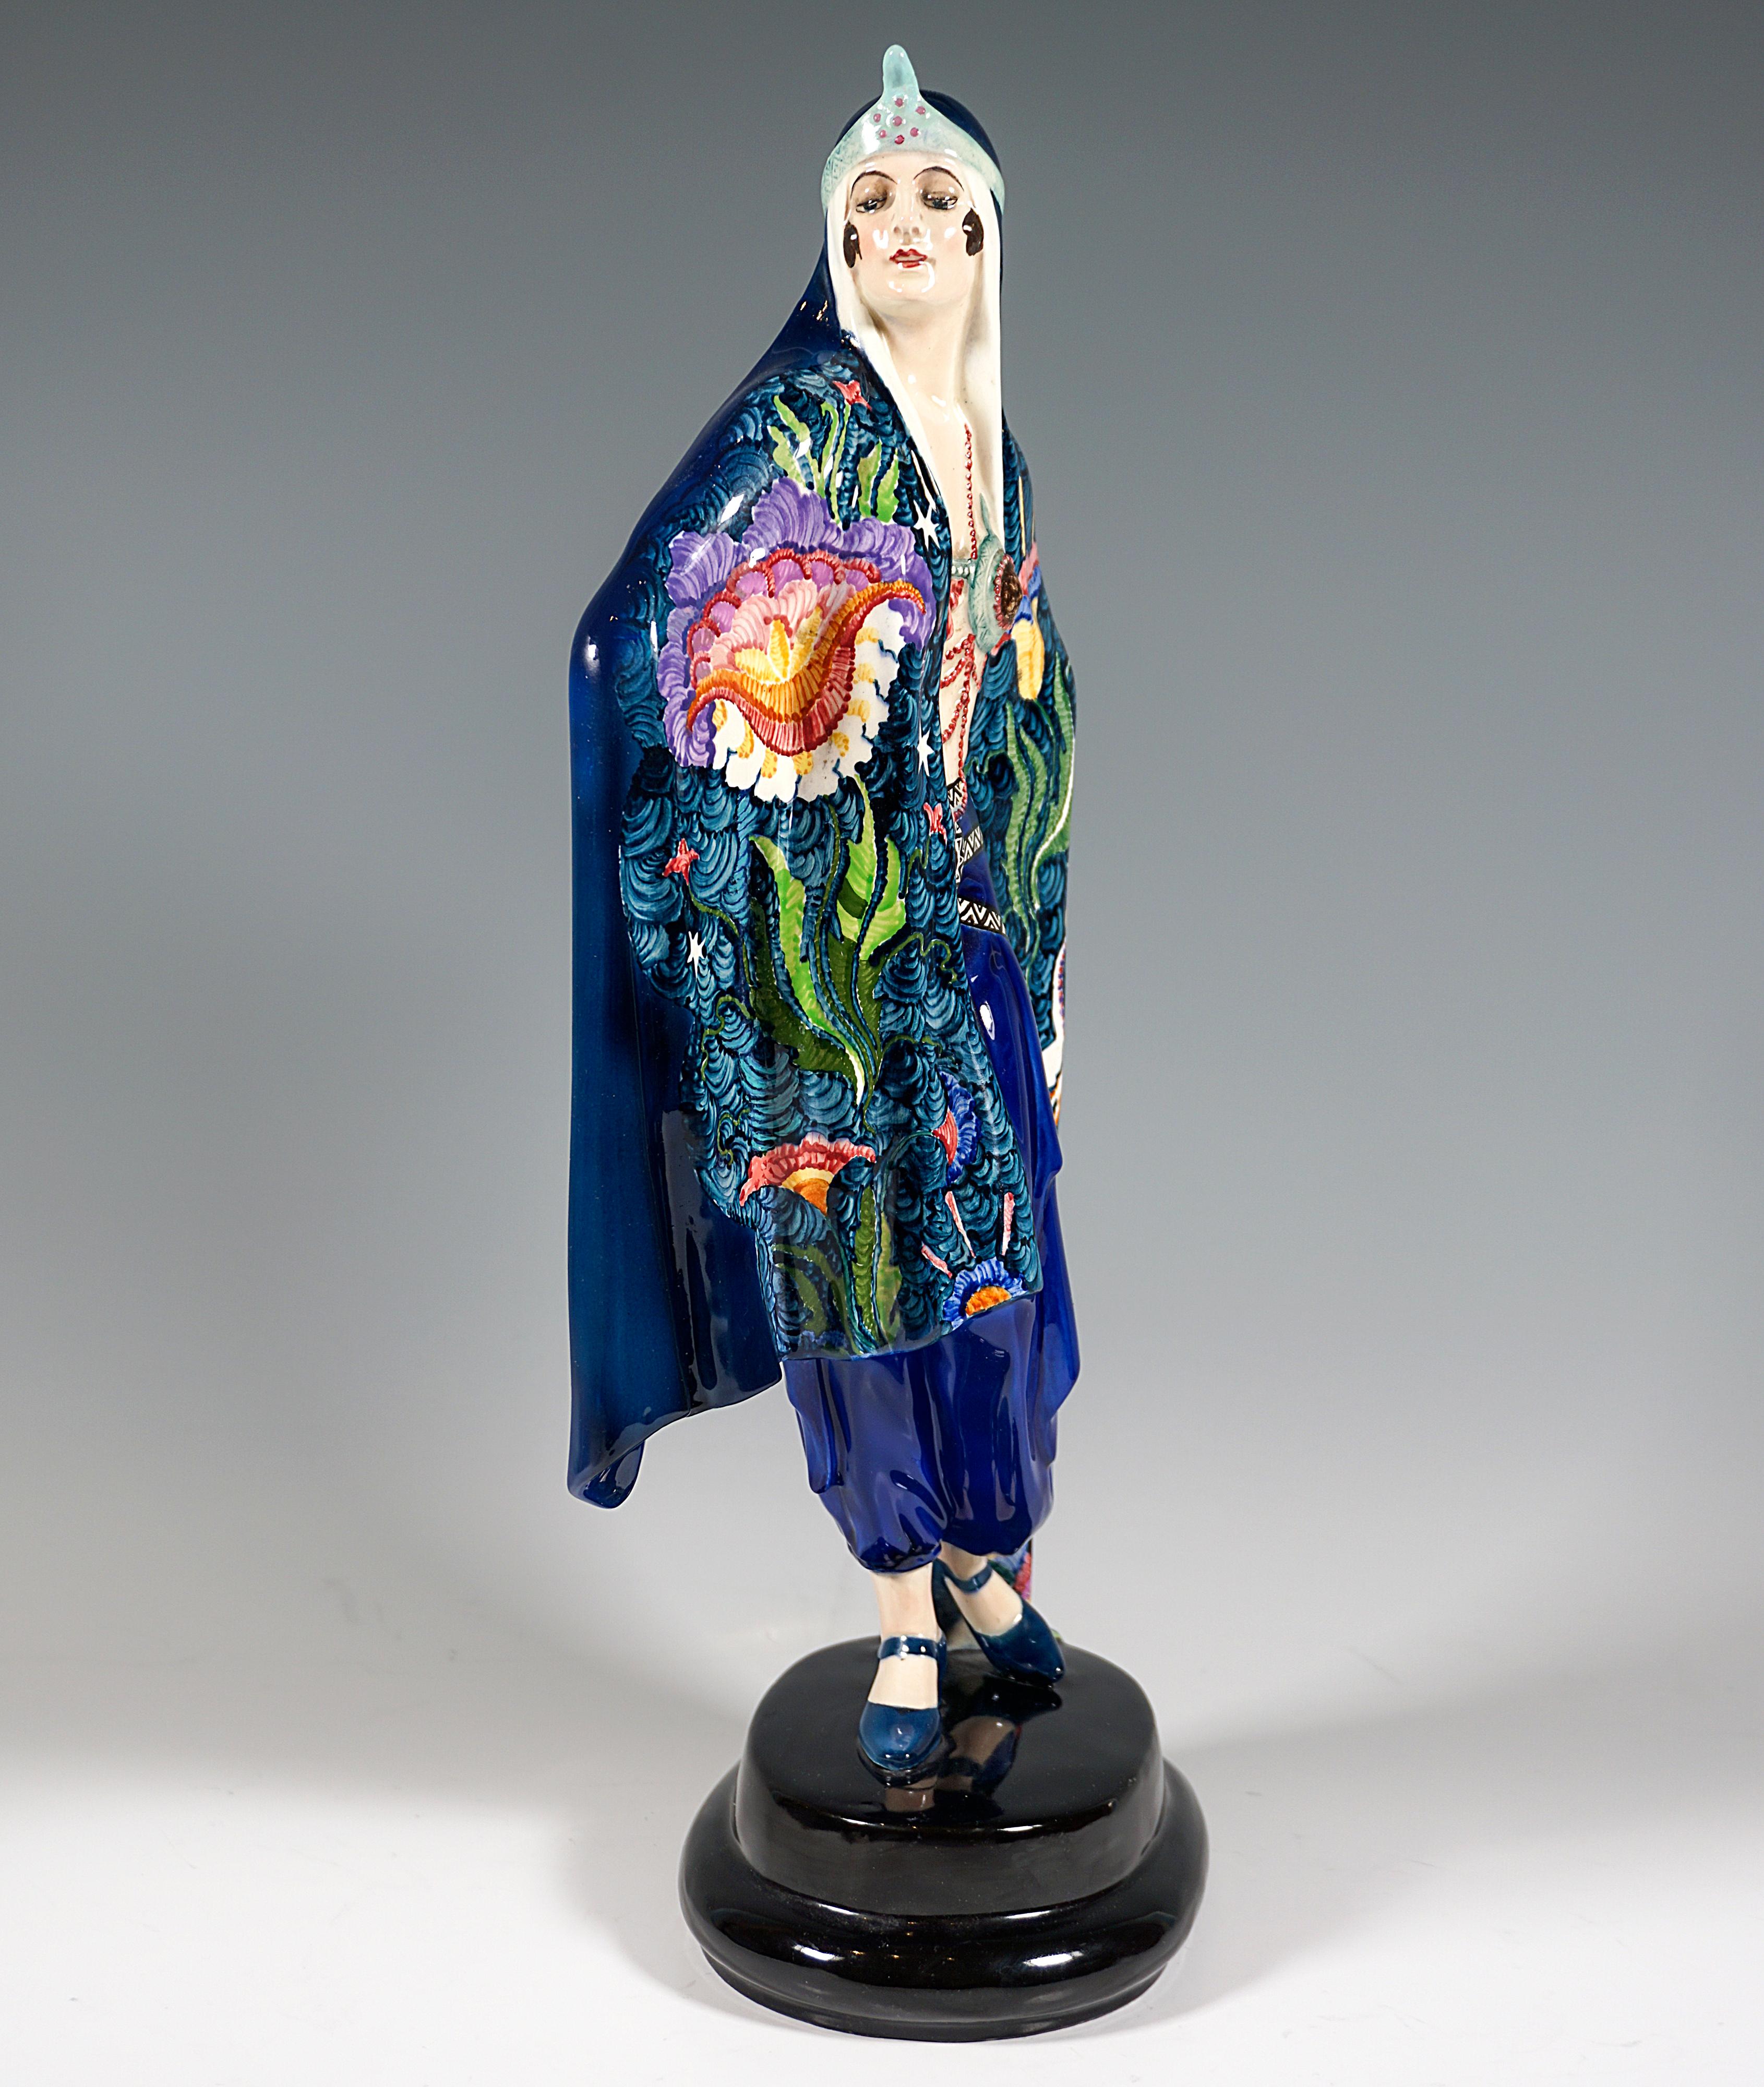 Sehr außergewöhnliche dekorierte Goldscheider Art Deco Keramikfigur aus den 1920er Jahren:
Darstellung einer stehenden, stolz zur Seite blickenden Dame in orientalischem Gewand, eingehüllt in ein großes, bis zum Boden reichendes blaugrünes Tuch, das